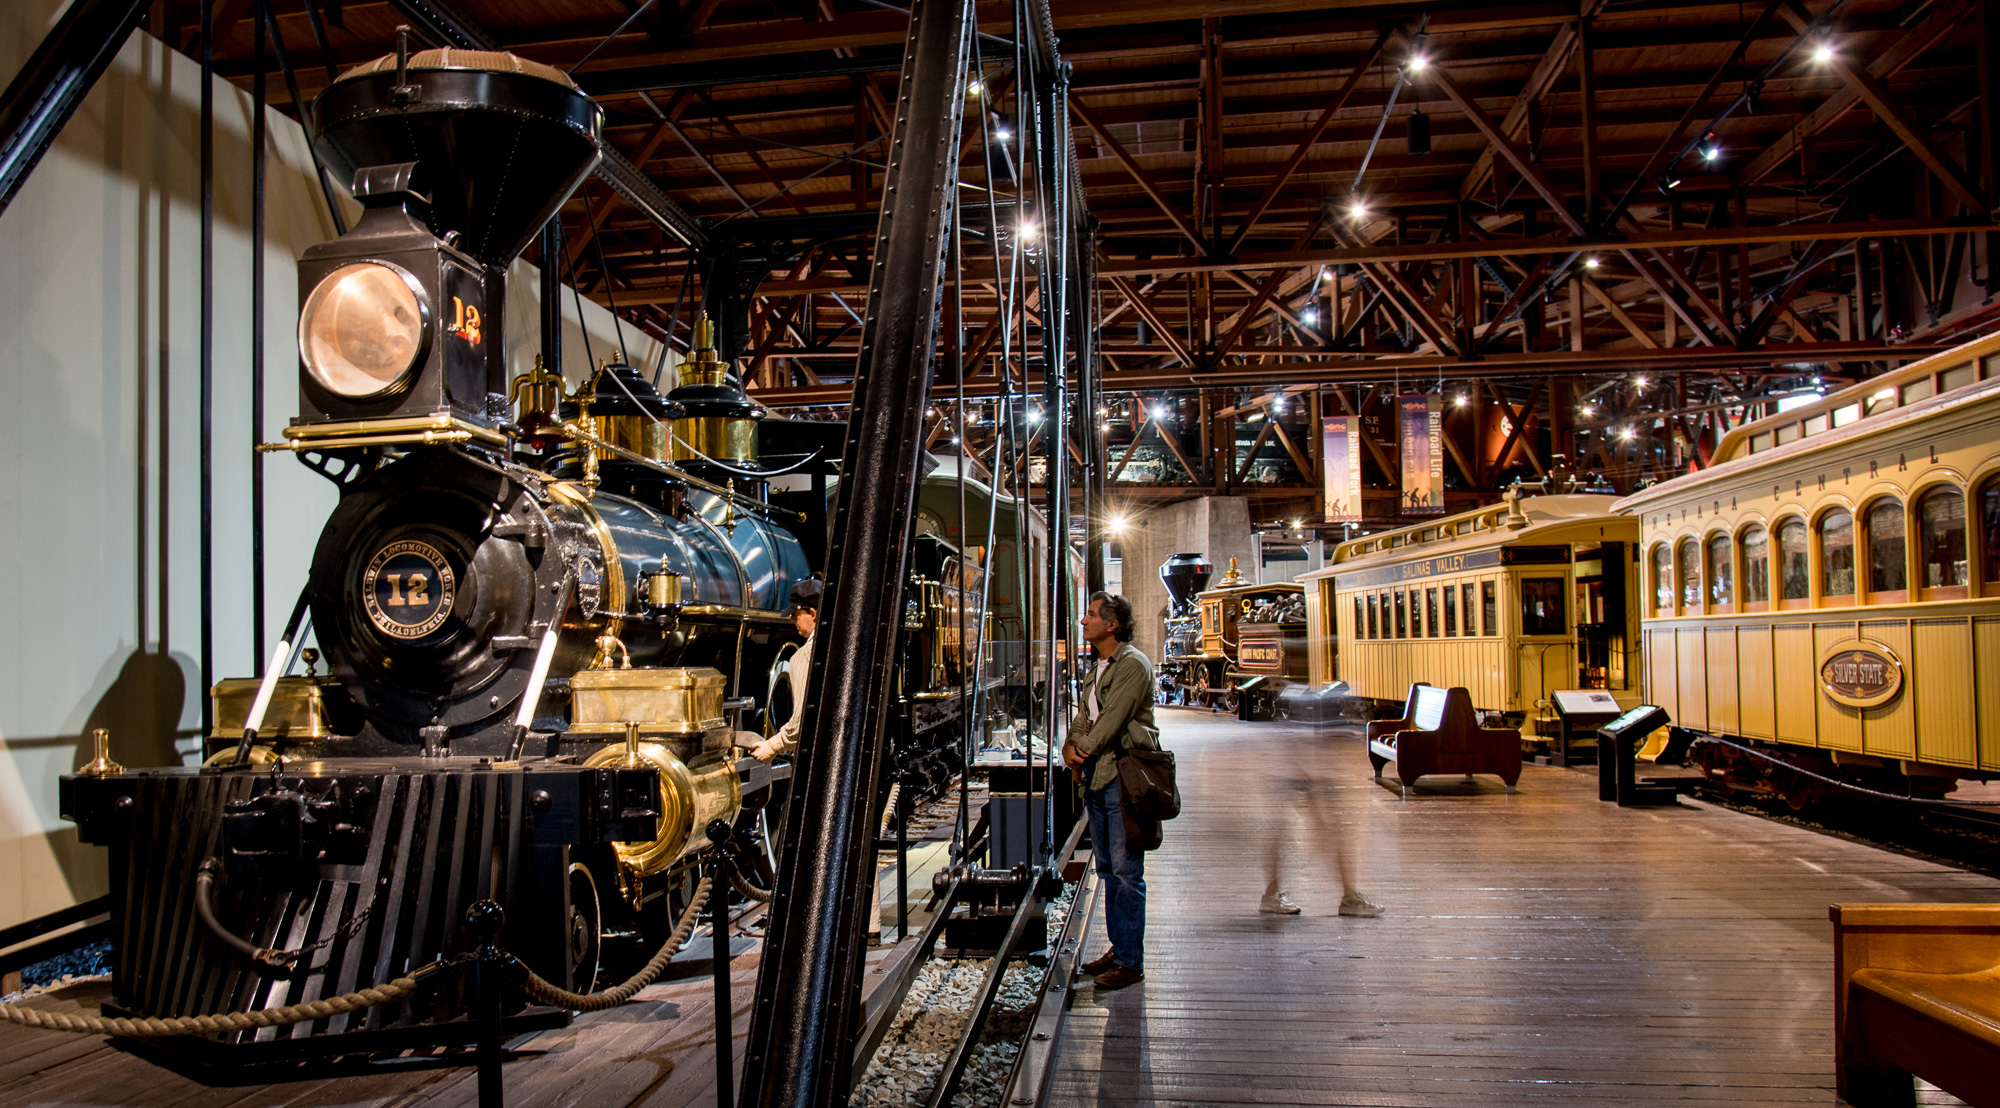 Old Town musée du train